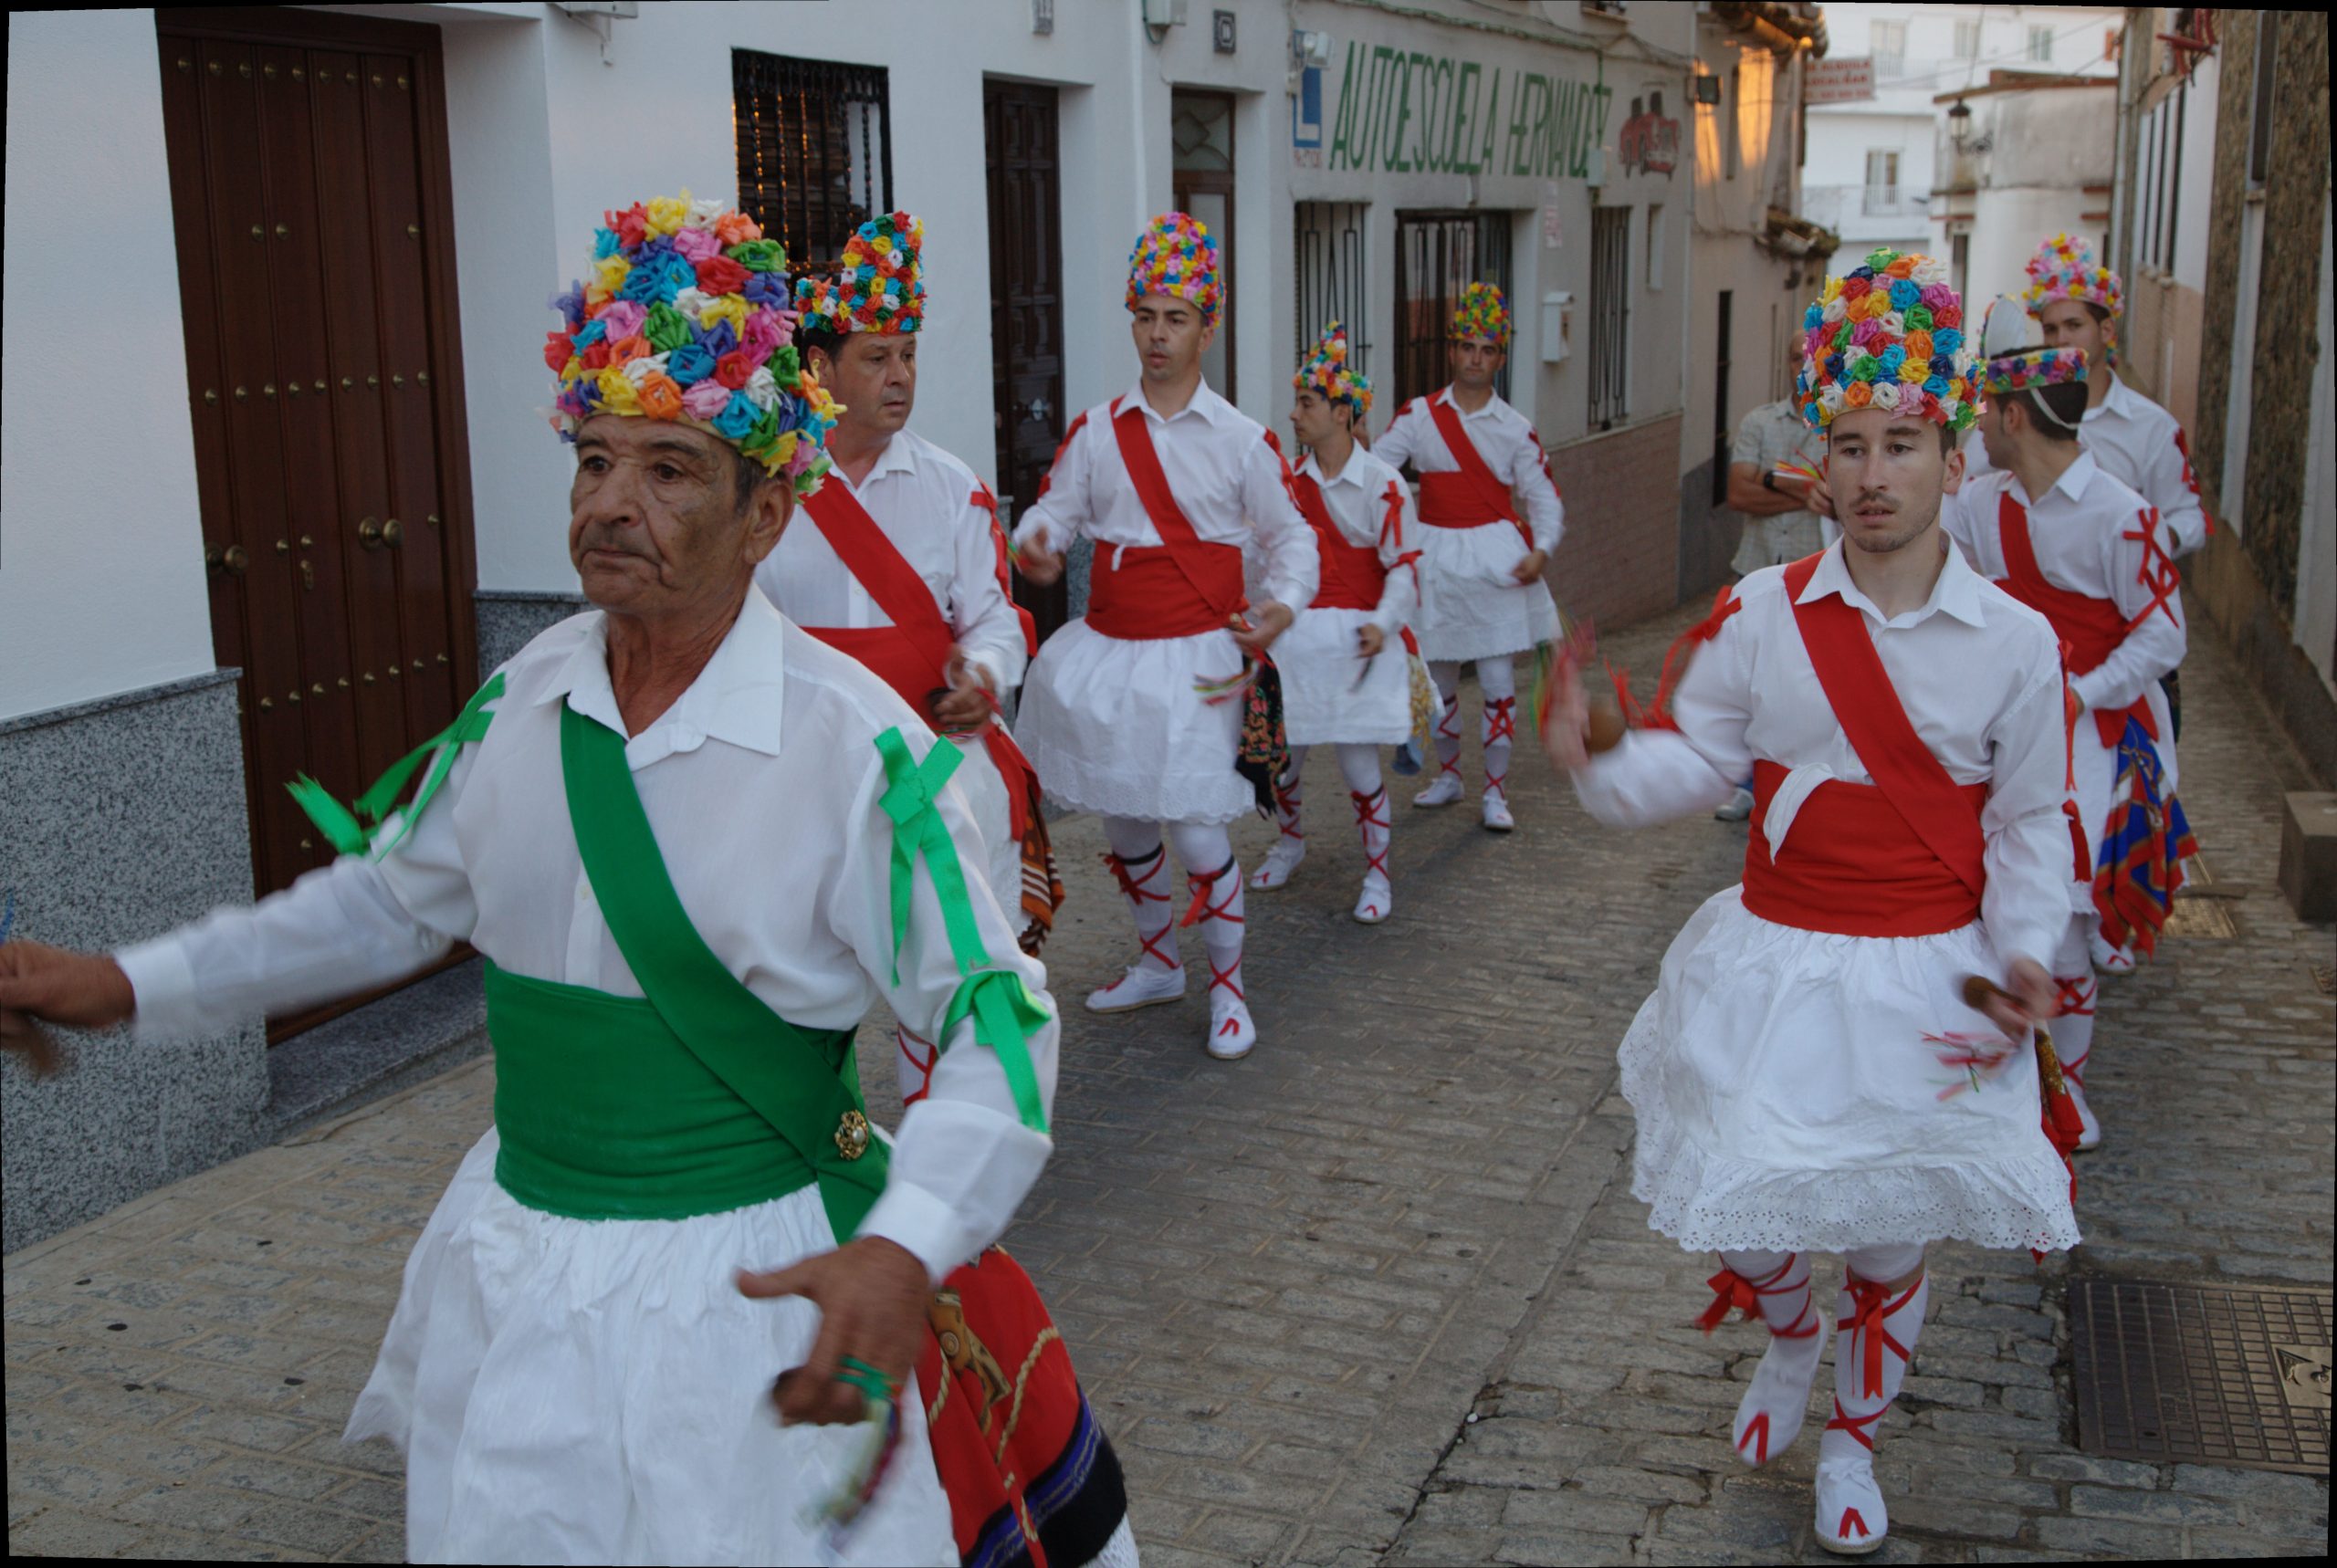 04 Danzantes recorriendo las calles del pueblo. Fregenal de la Sierra. Badajoz